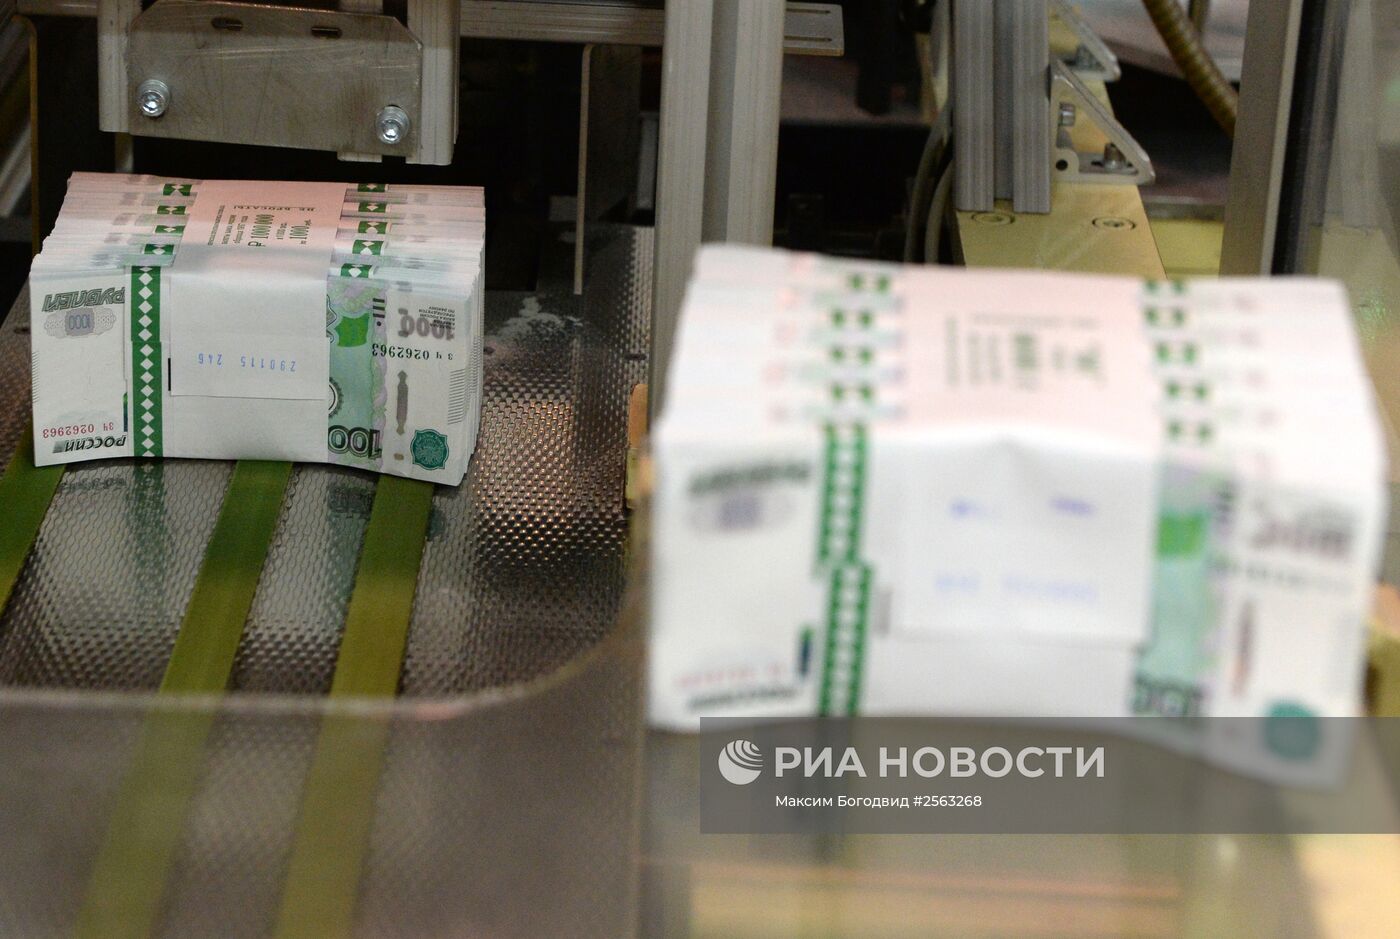 Печать денежных купюр на фабрике ФГУП "Гознак" в Перми